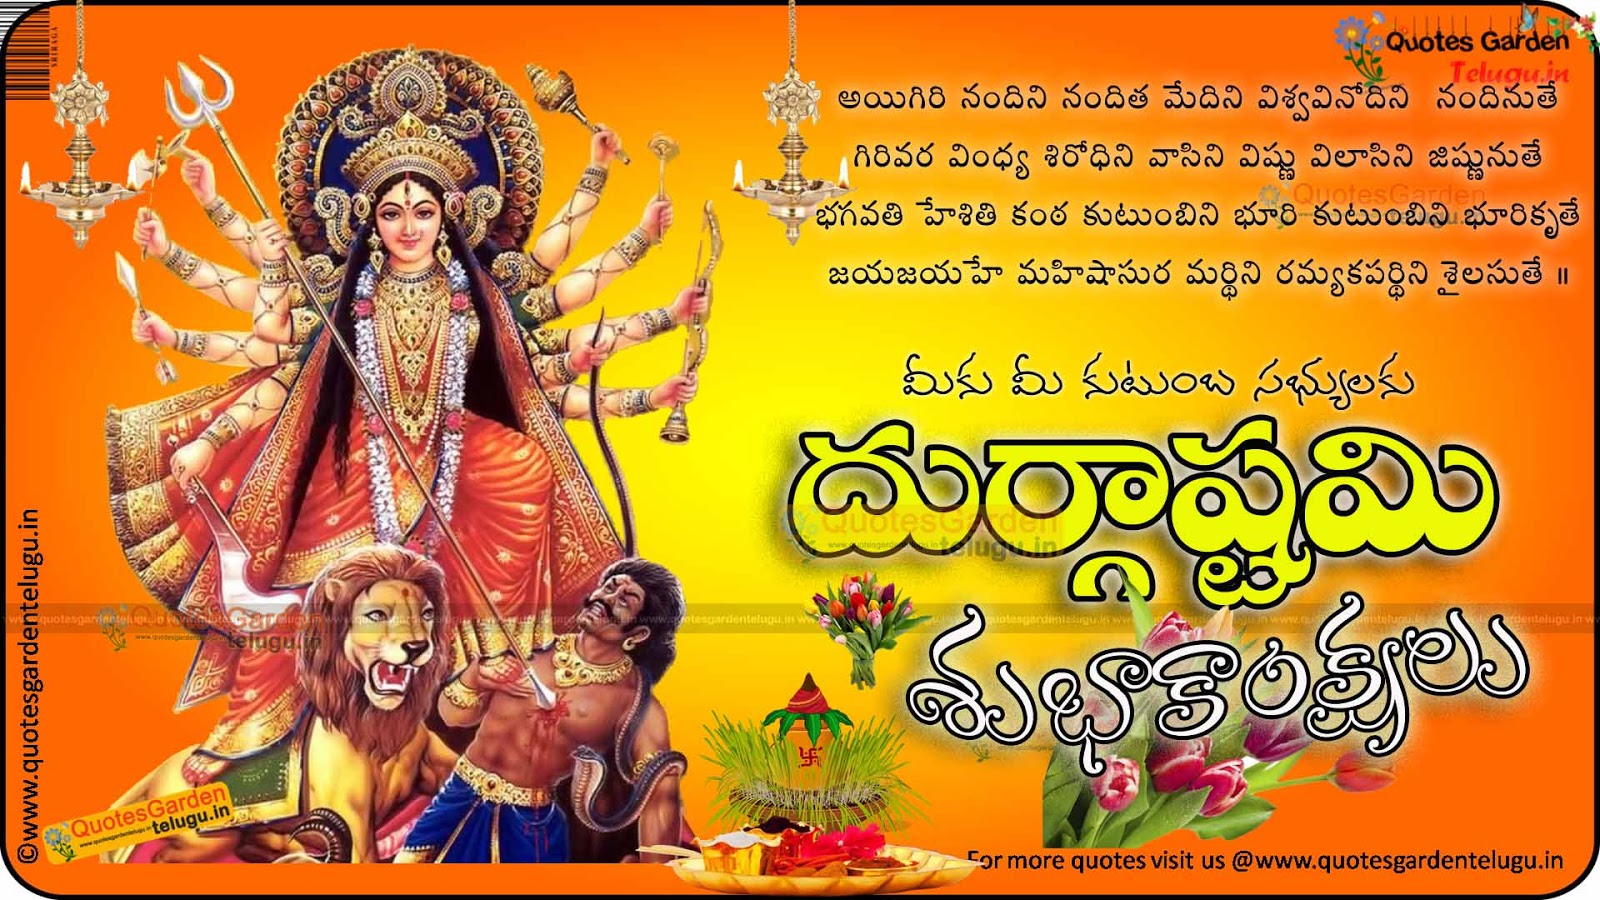 Durgashtami greetings in Telugu | QUOTES GARDEN TELUGU | Telugu ...